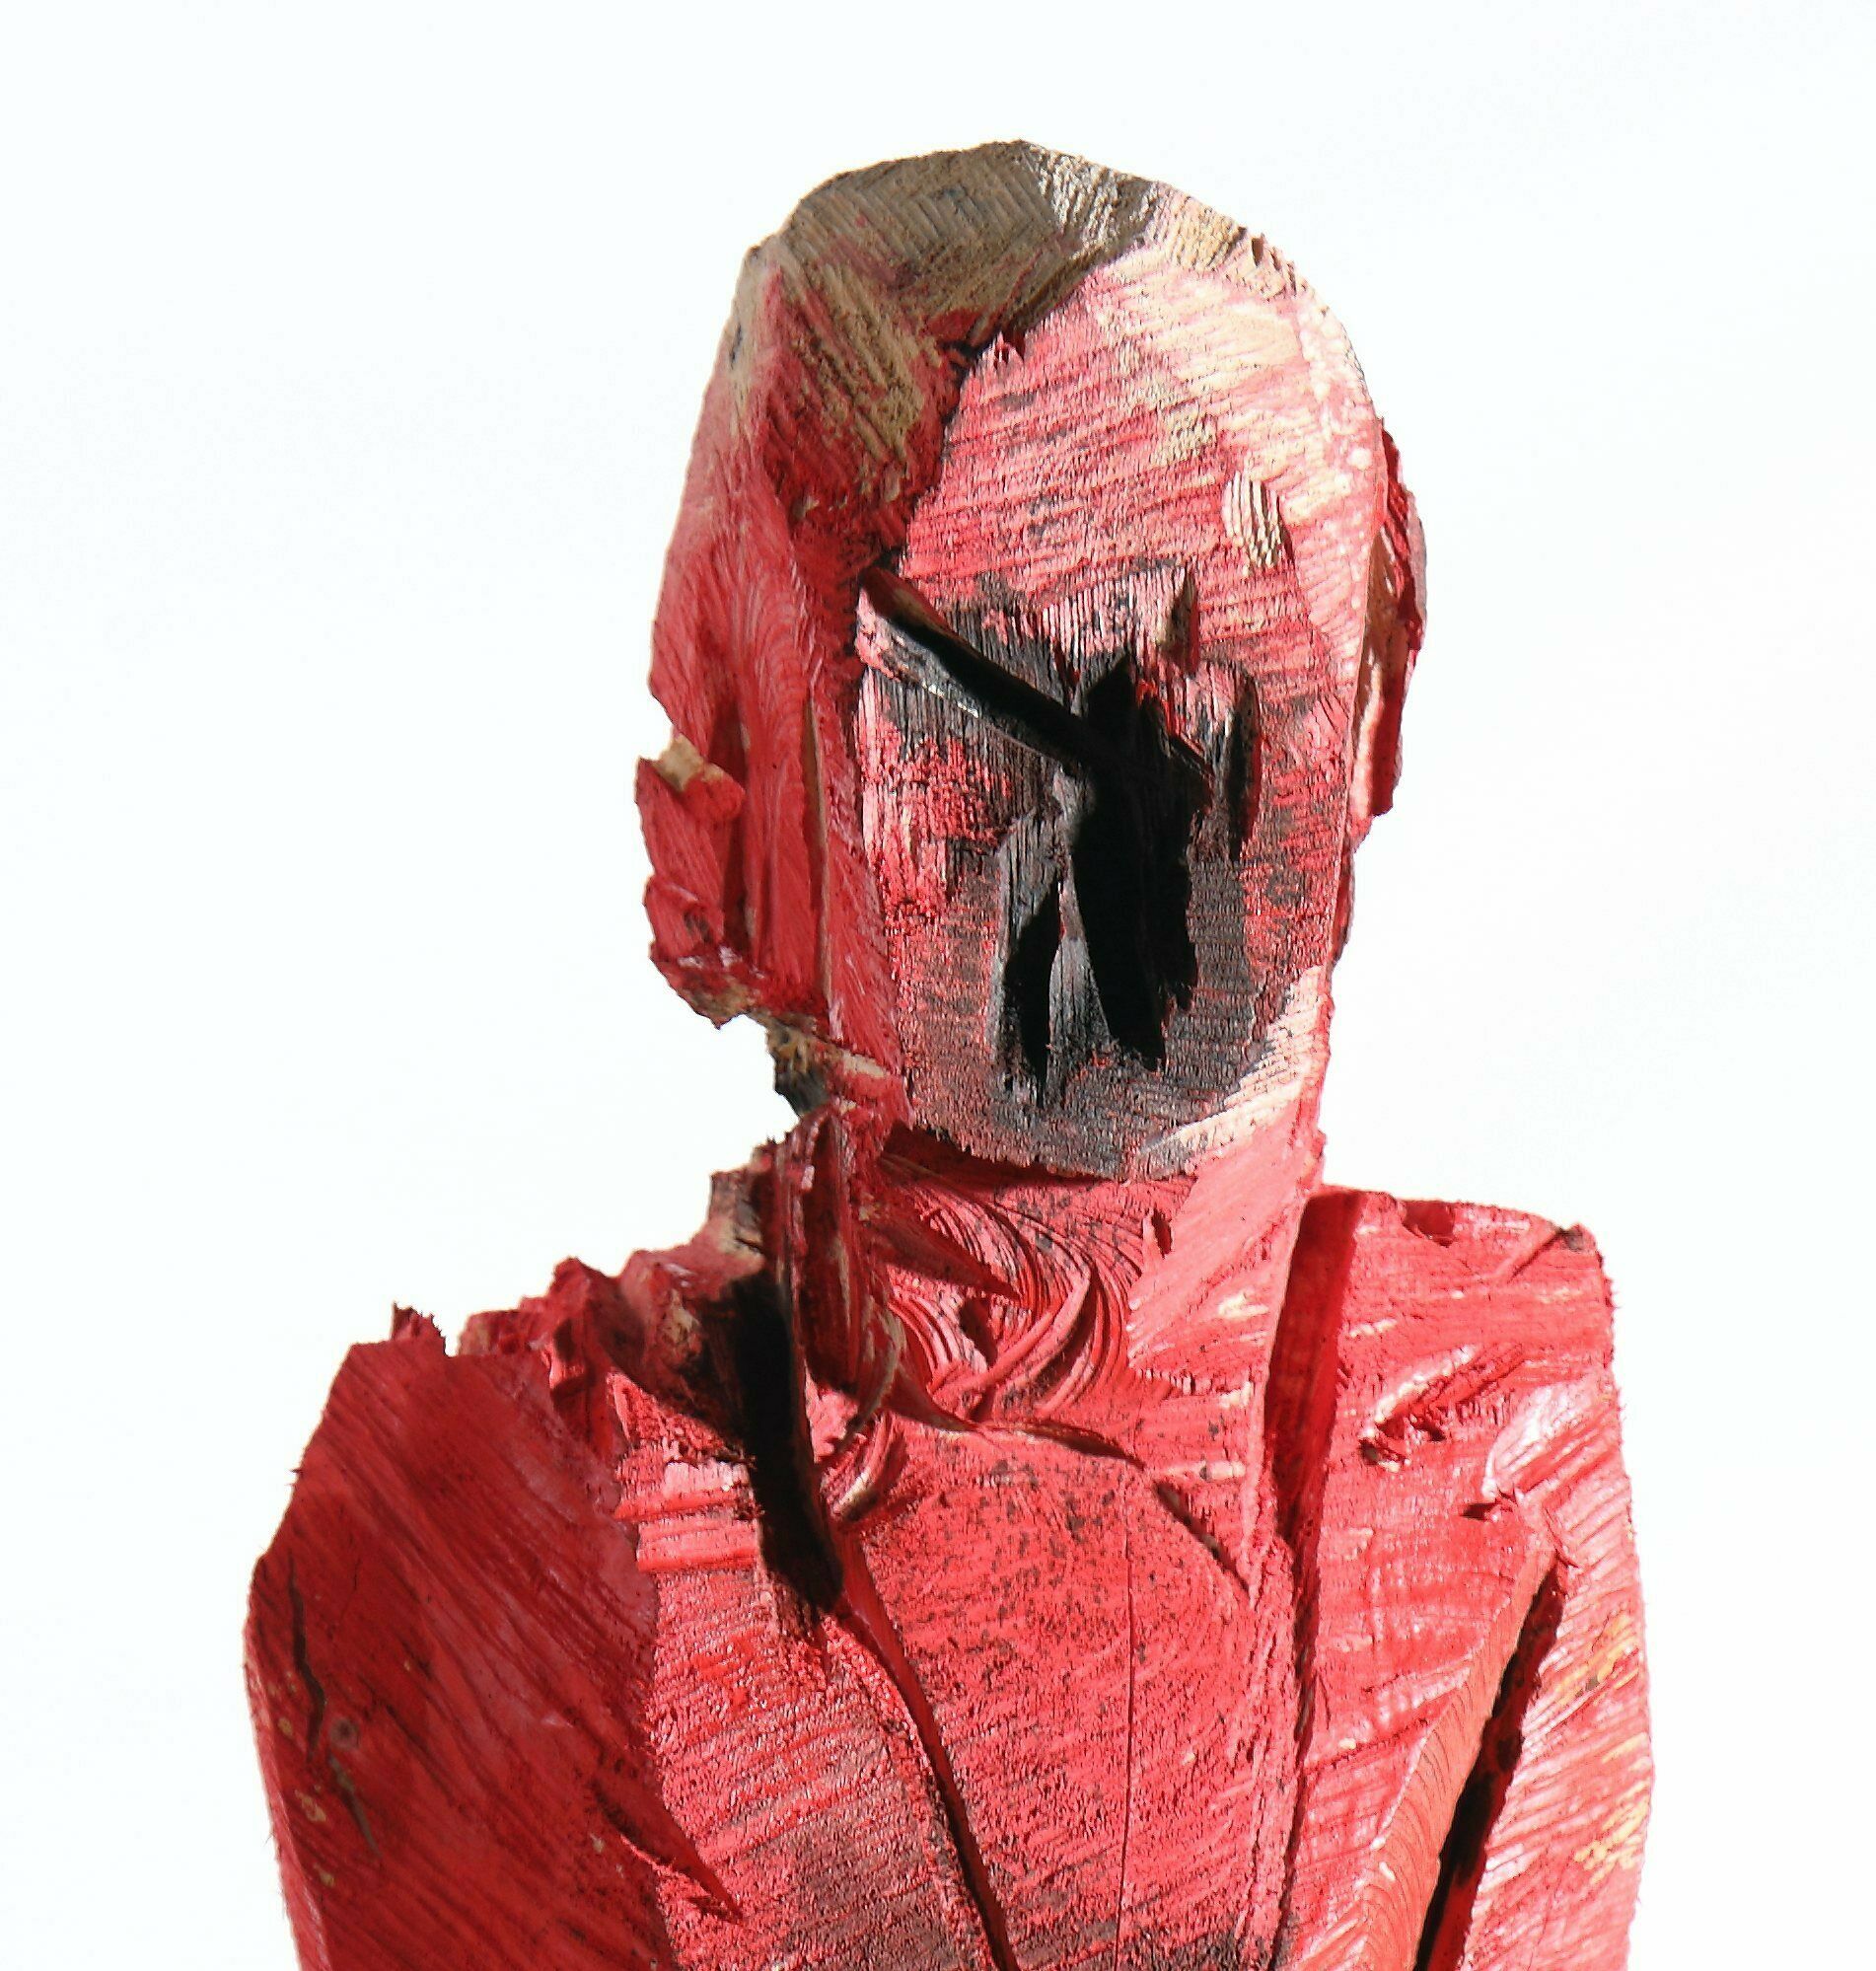 Skulptur "Regi" (2020)